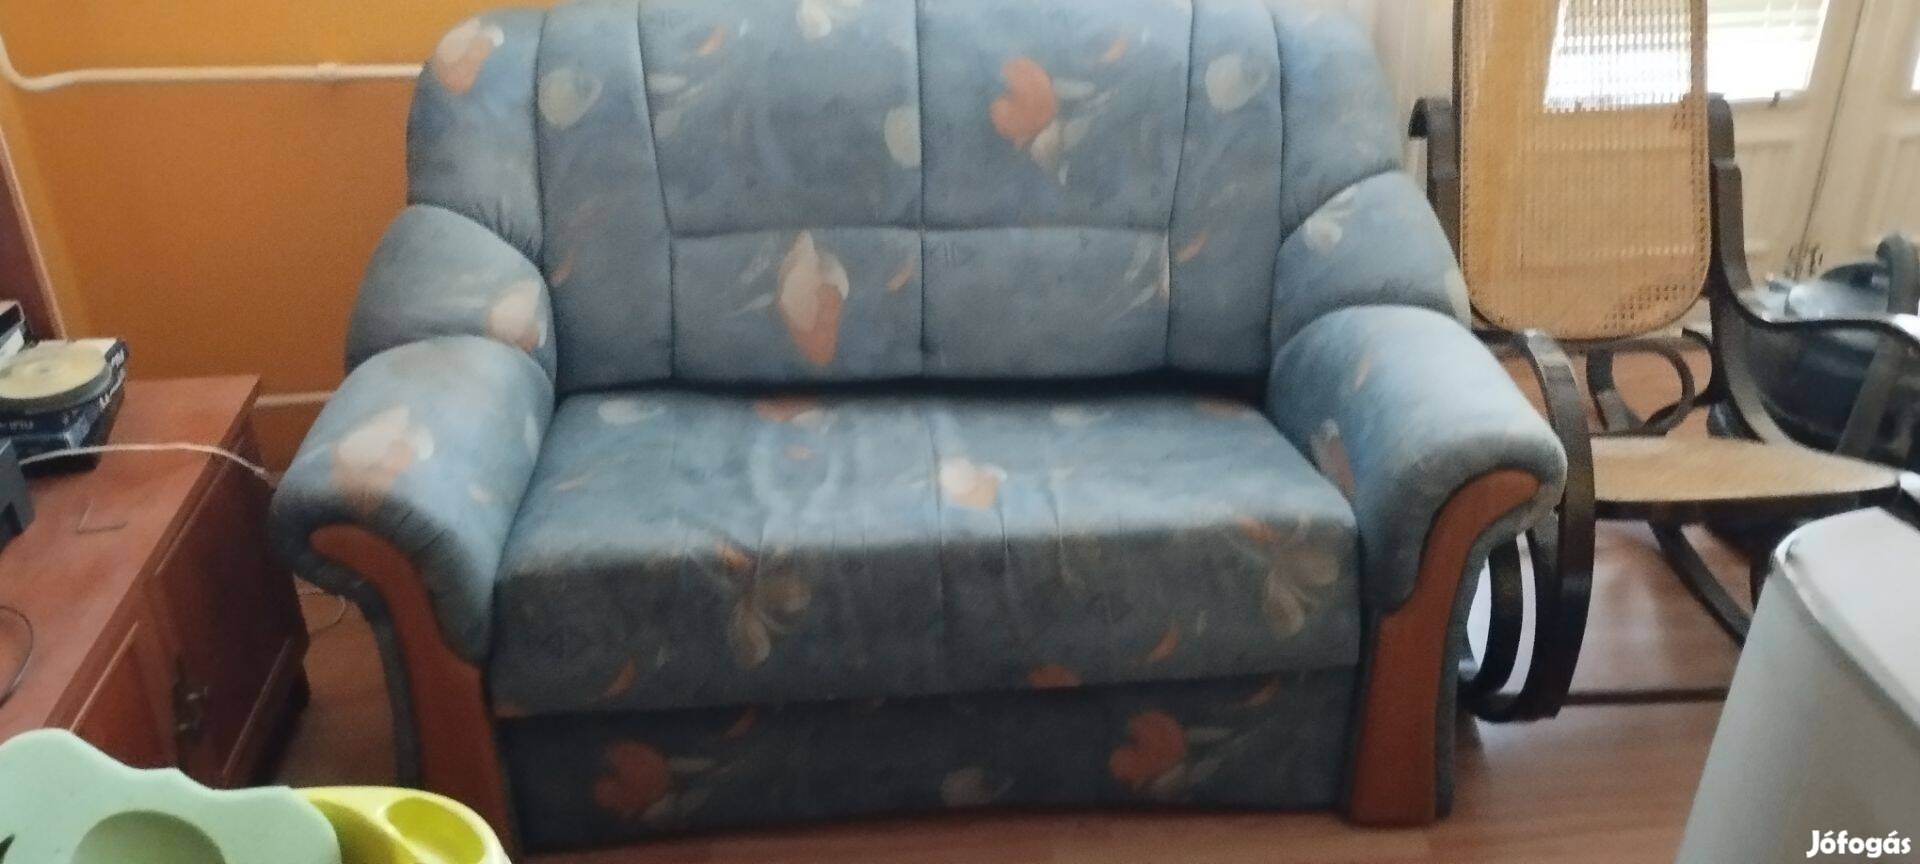 Kétszemélyes kanapé+fotel